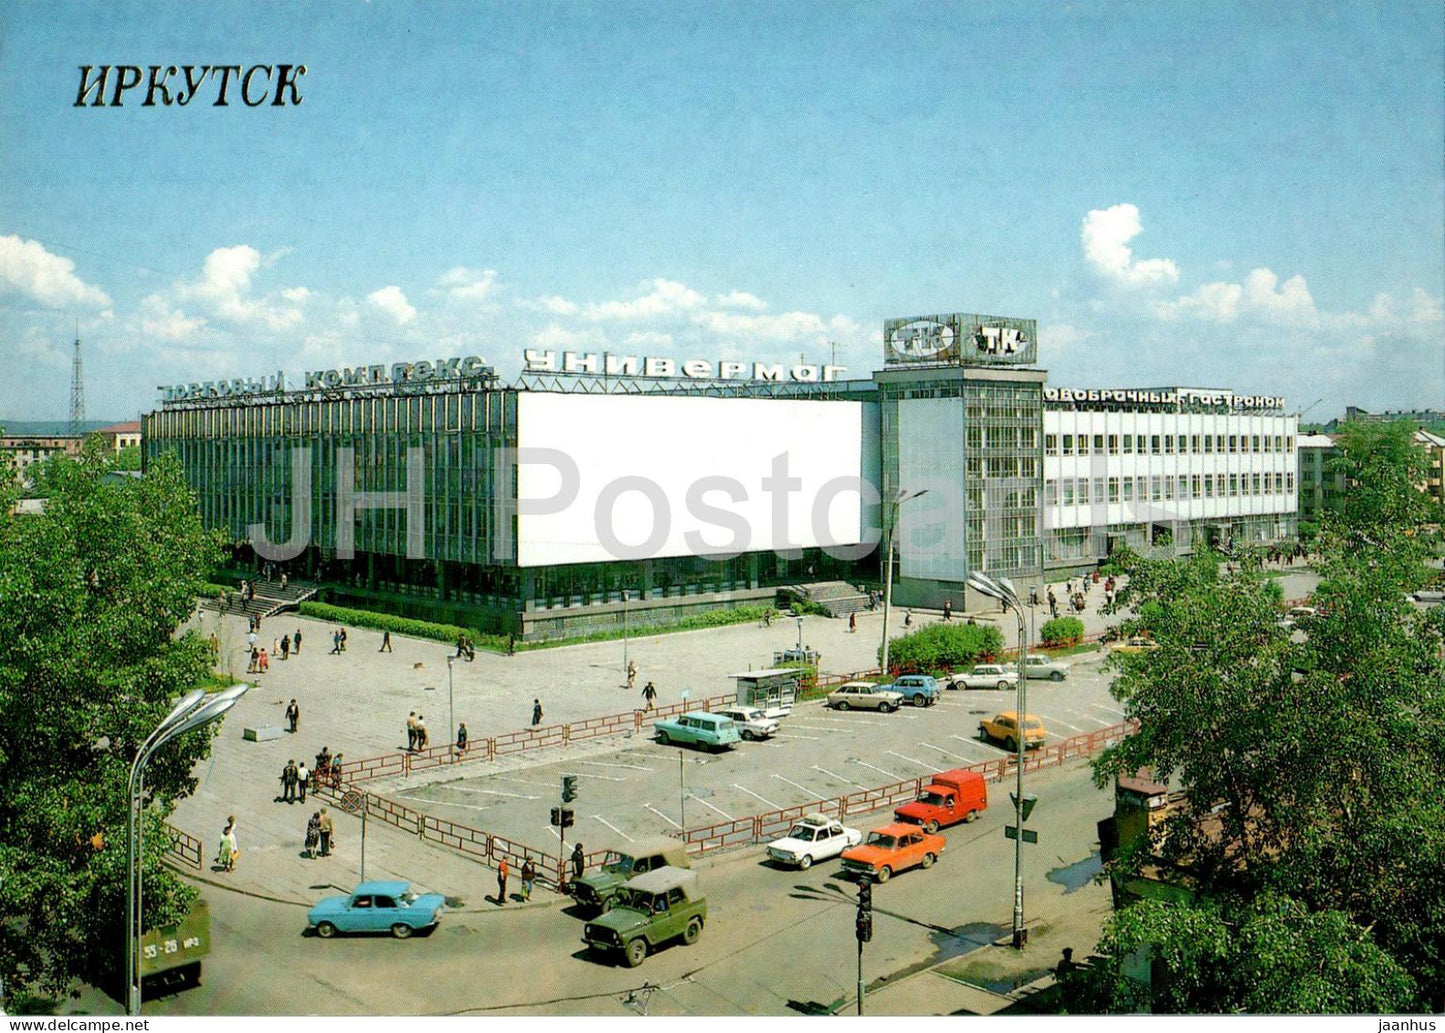 Irkutsk - Trade Centre - car - 1990 - Russia USSR - unused - JH Postcards